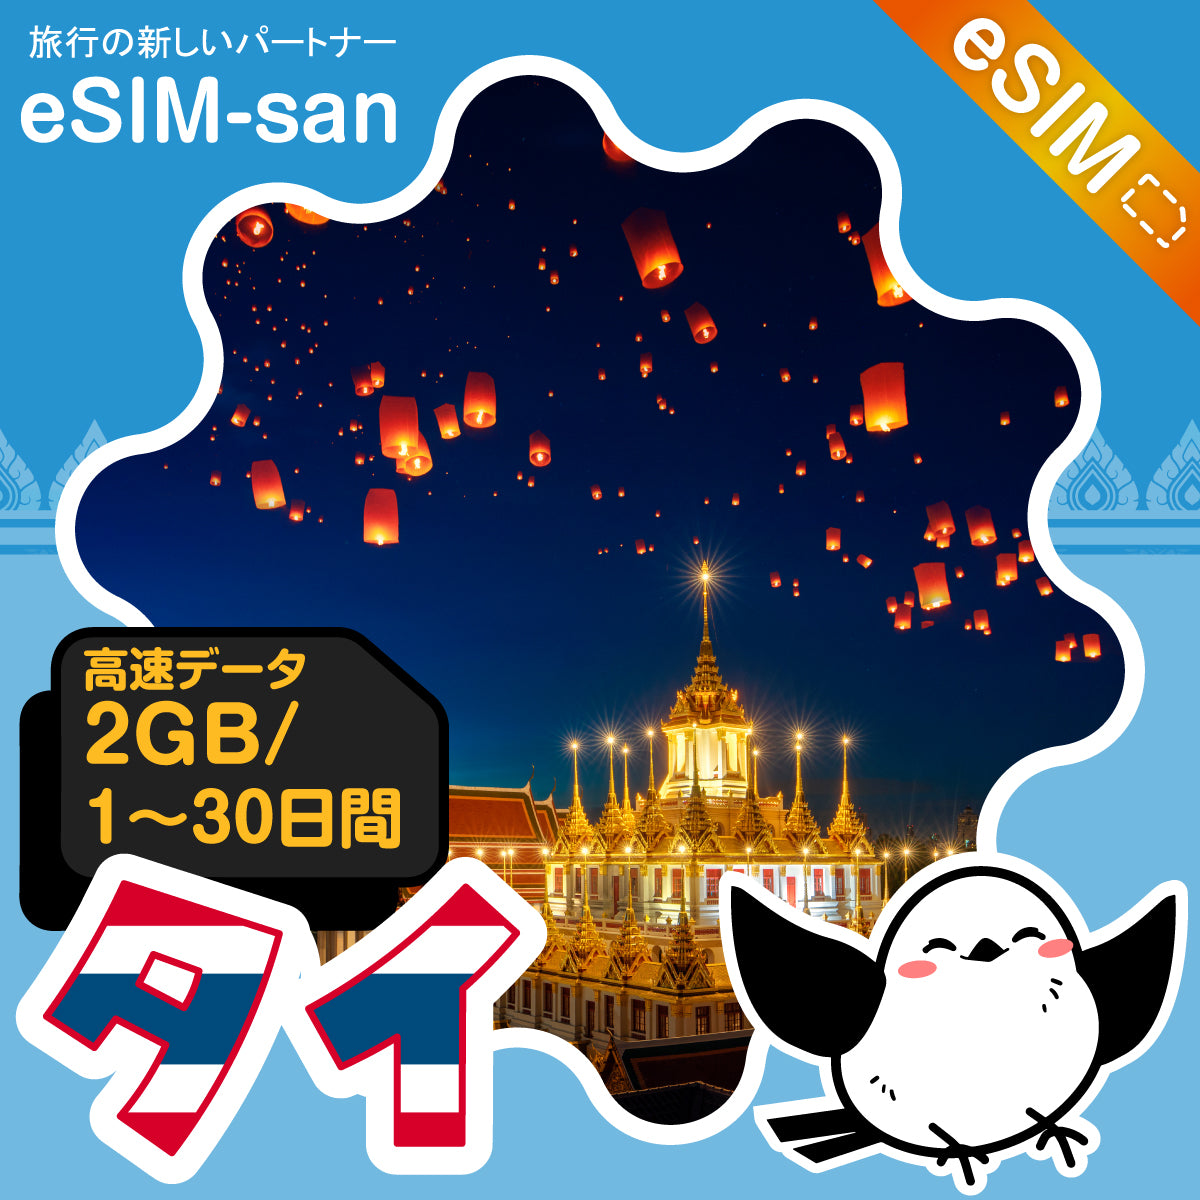 タイeSIMの2GB/dayプラン画像_eSIM-san